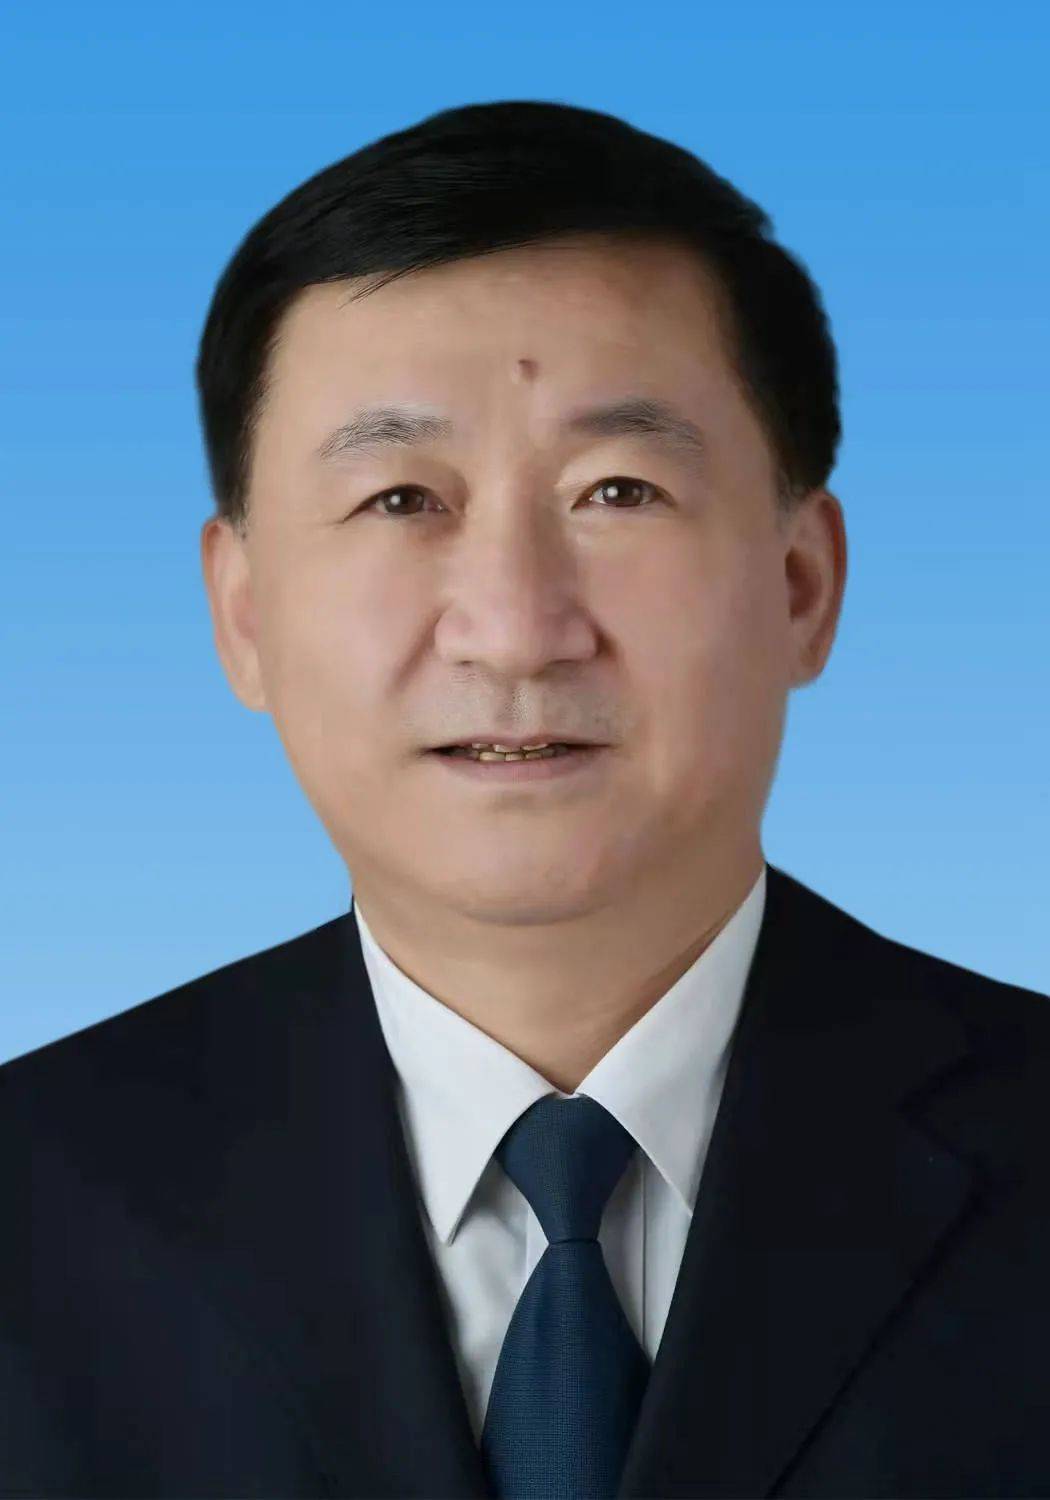 1966年8月生,中央党校大学,中共党员,现任阳泉市政府党组成员,副市长